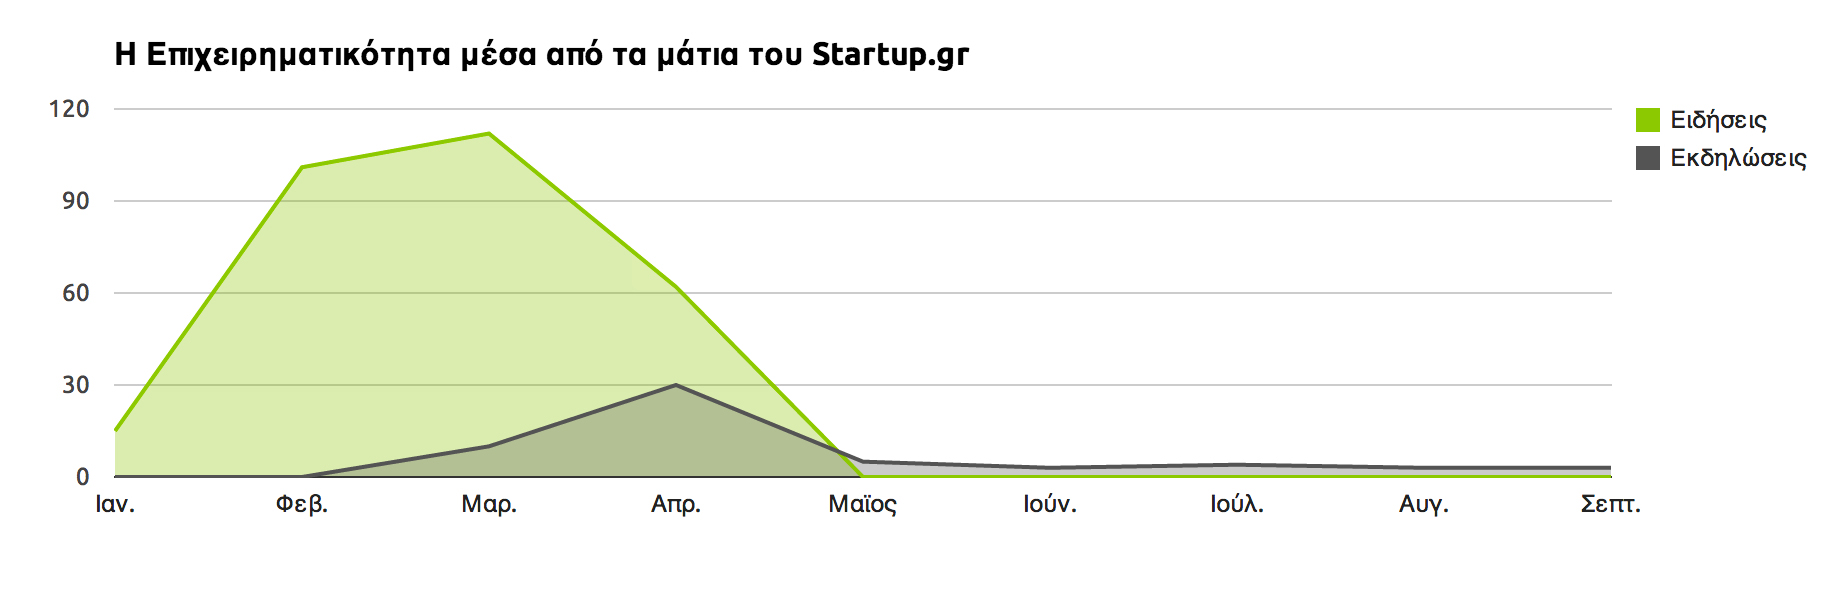 Καλημέρα! :) Σας παρουσιάζουμε τα Startup Stats!